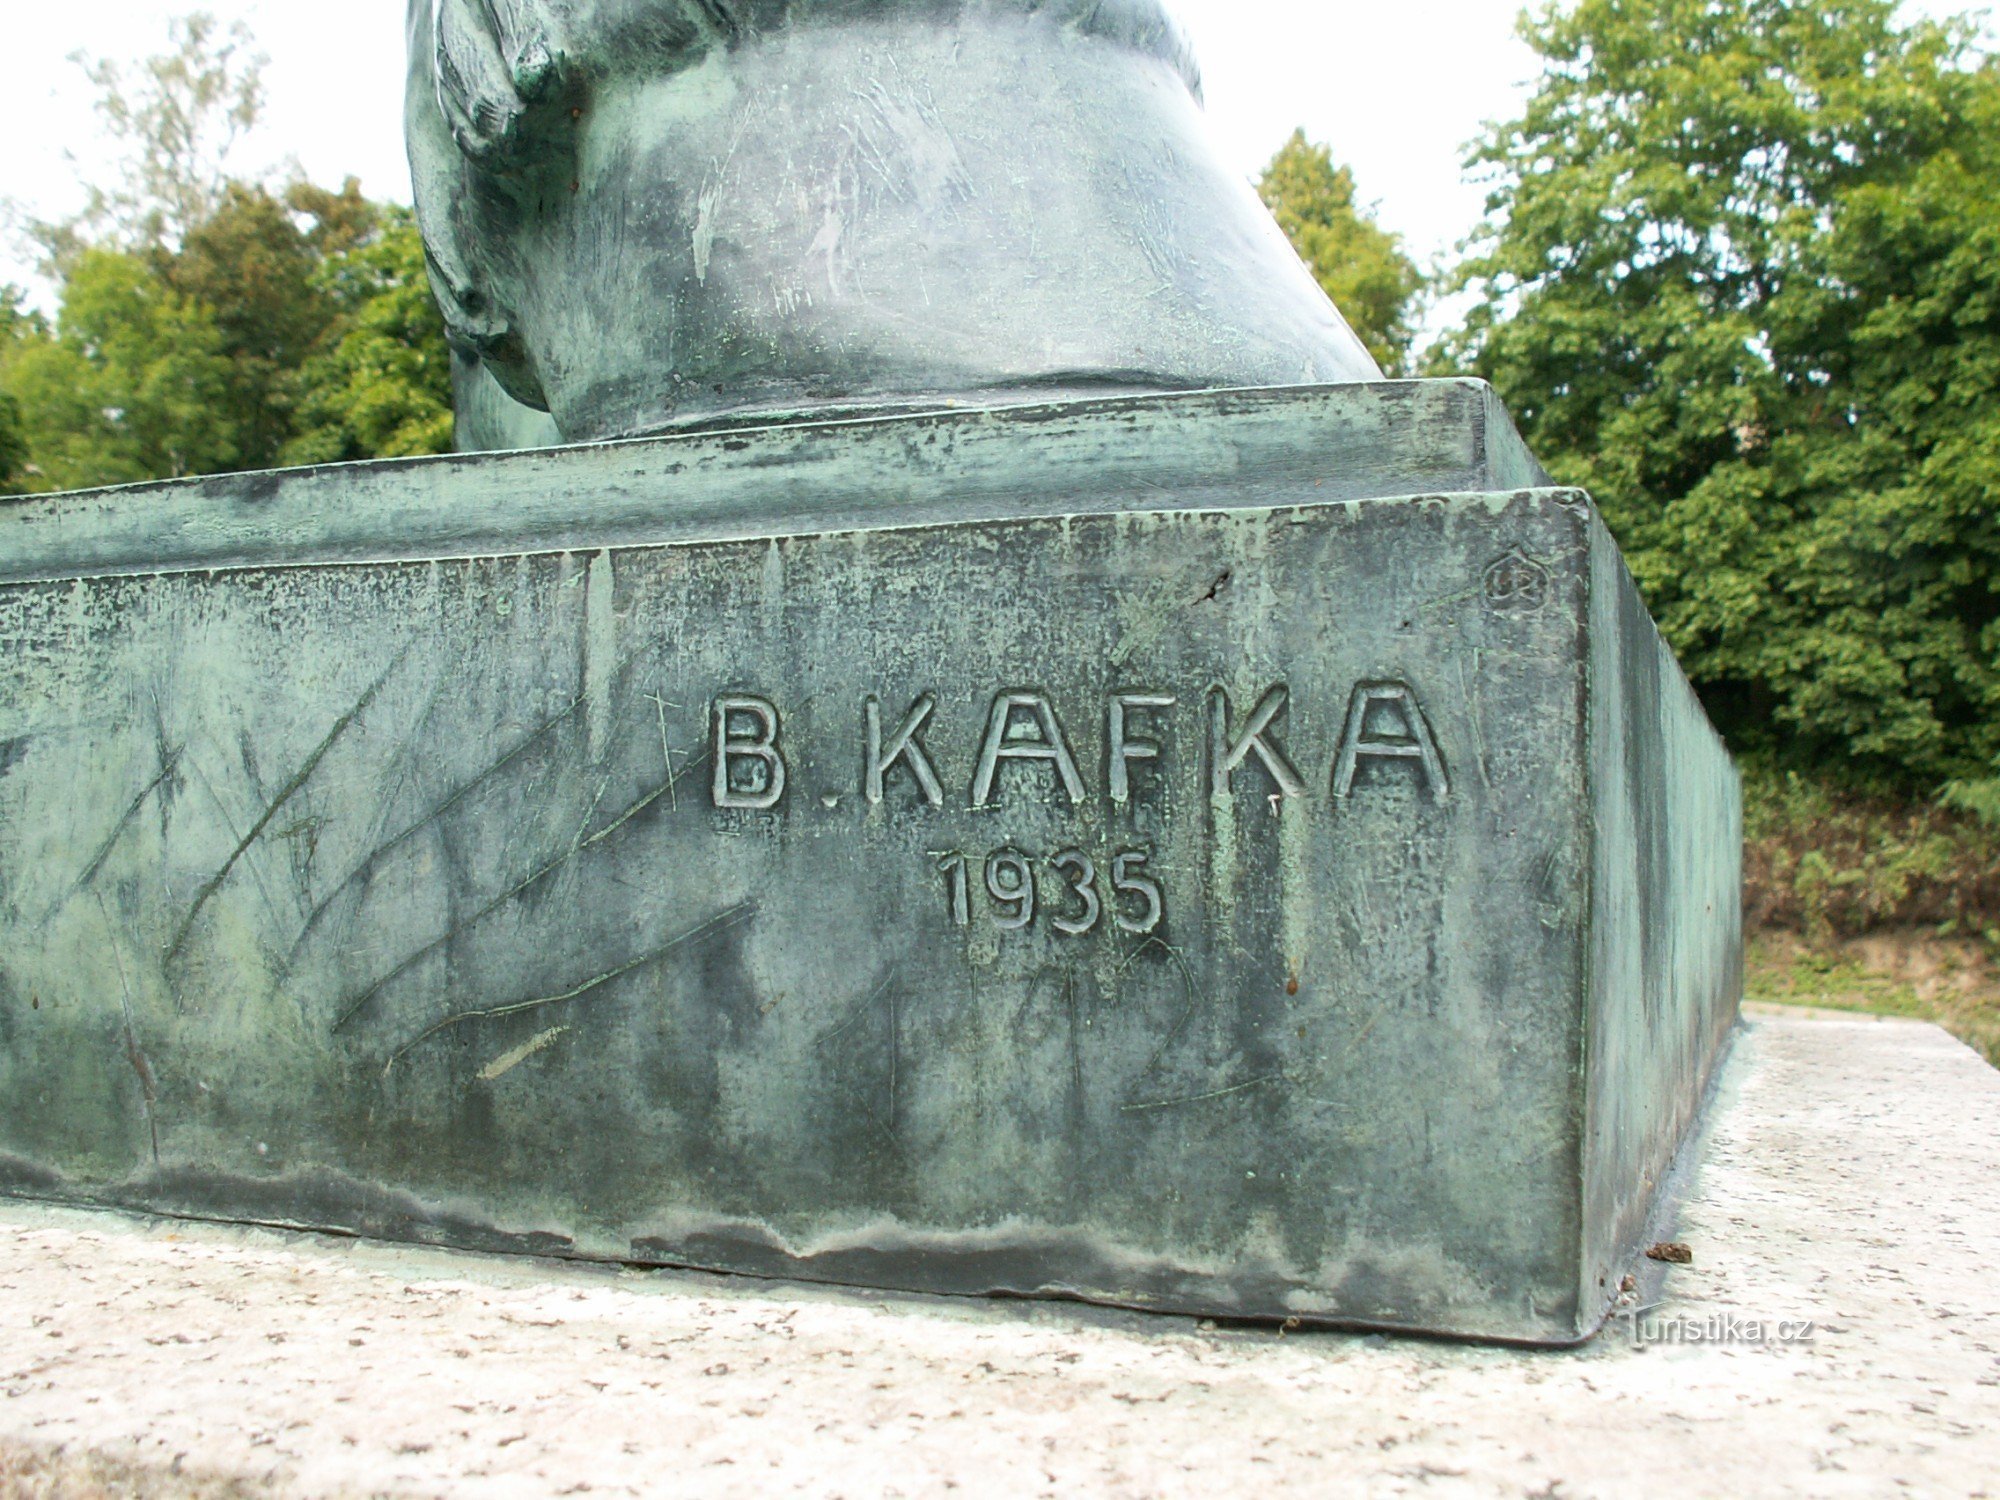 Detalle de la estatua con el nombre de su autor